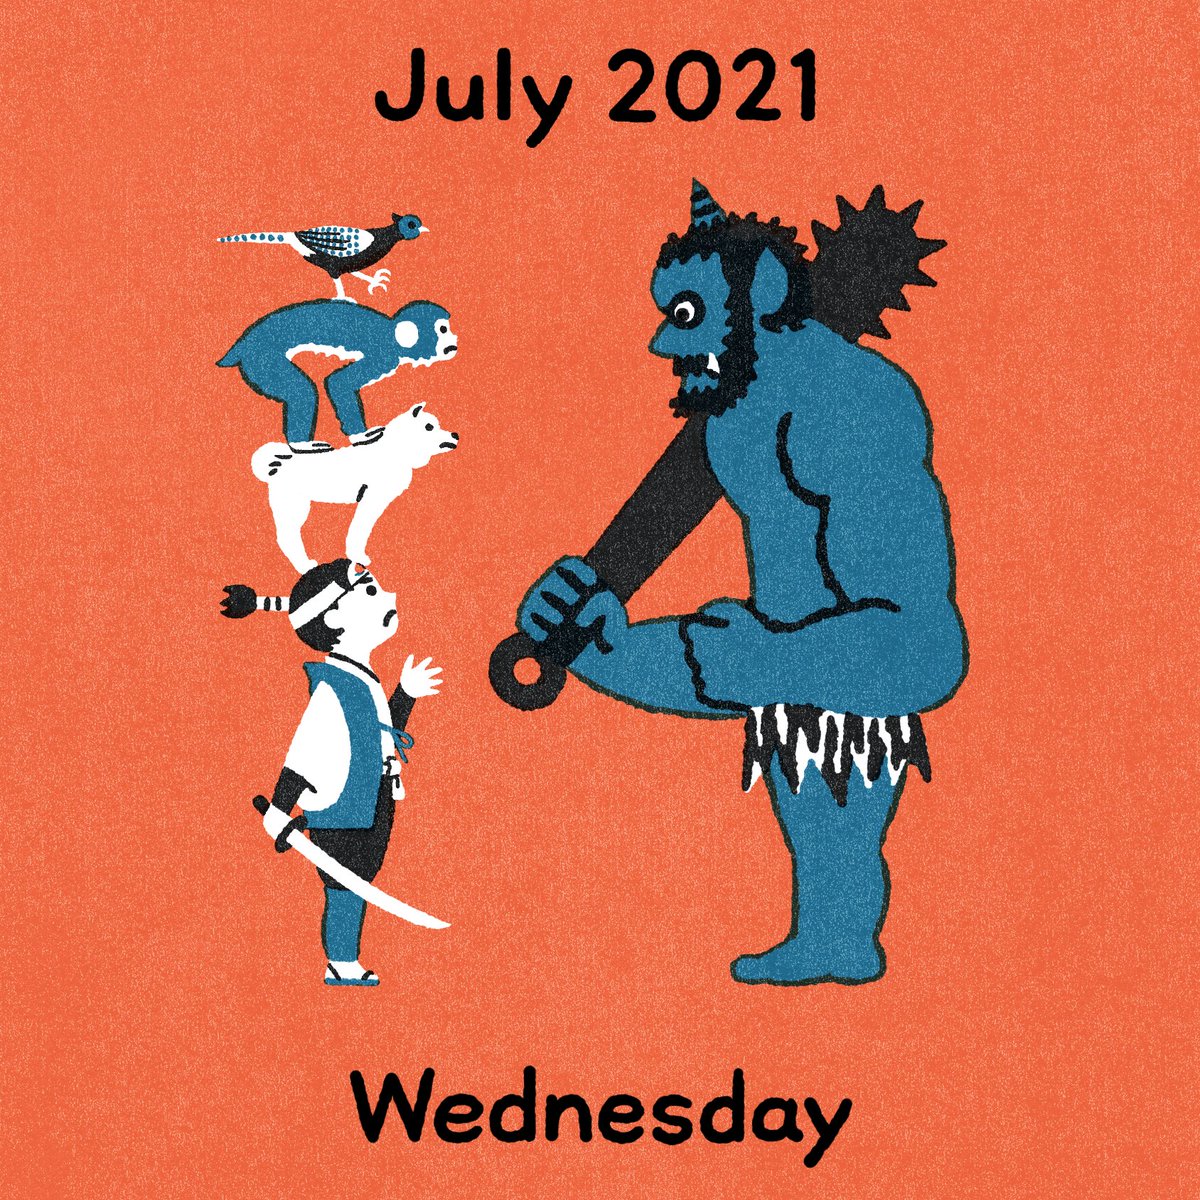 「2021年7月14日

#イラスト数字の日めくりカレンダー 」|寺山武士 Takeshi Terayamaのイラスト